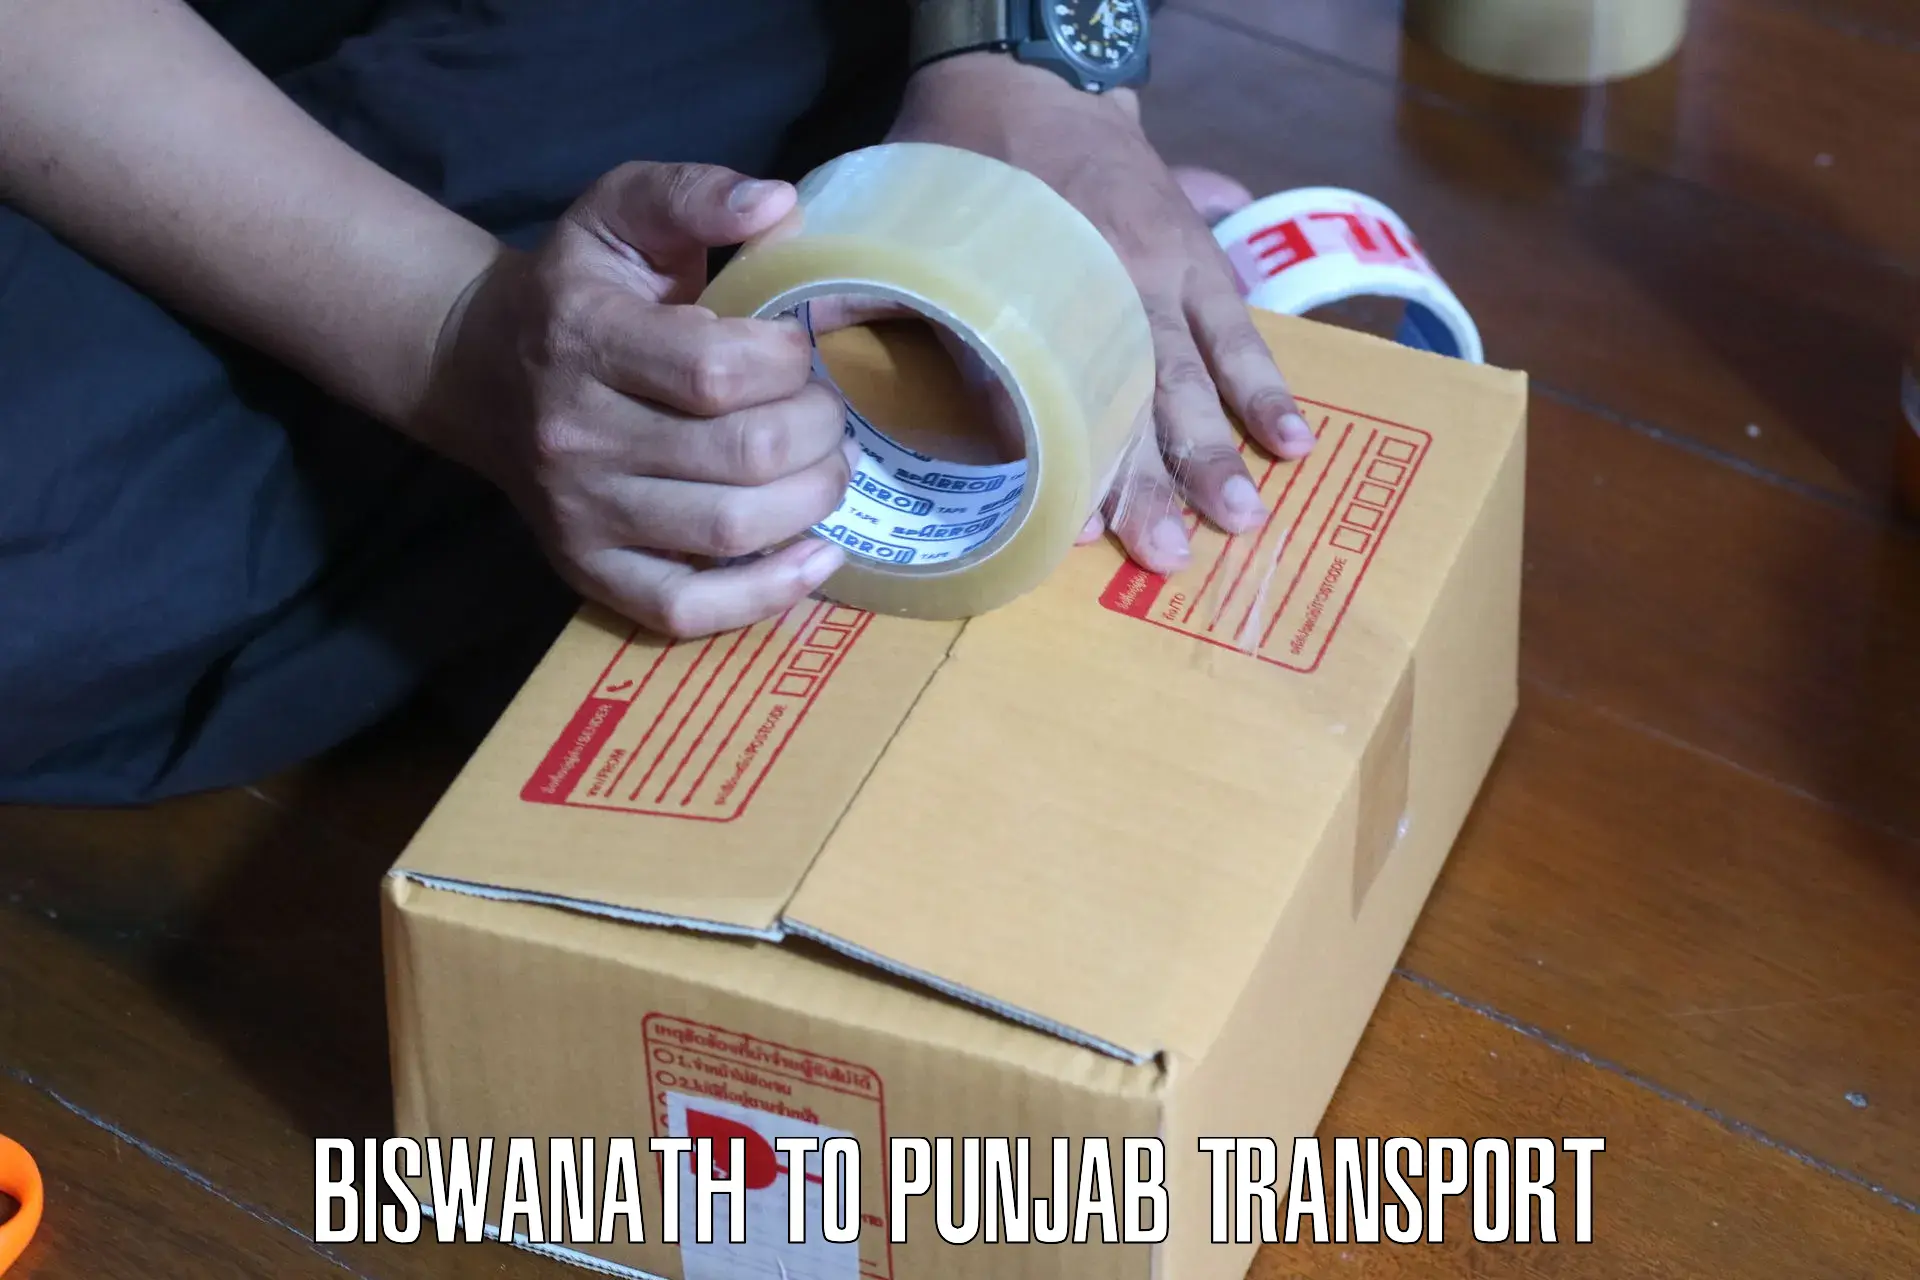 Interstate transport services in Biswanath to Talwara